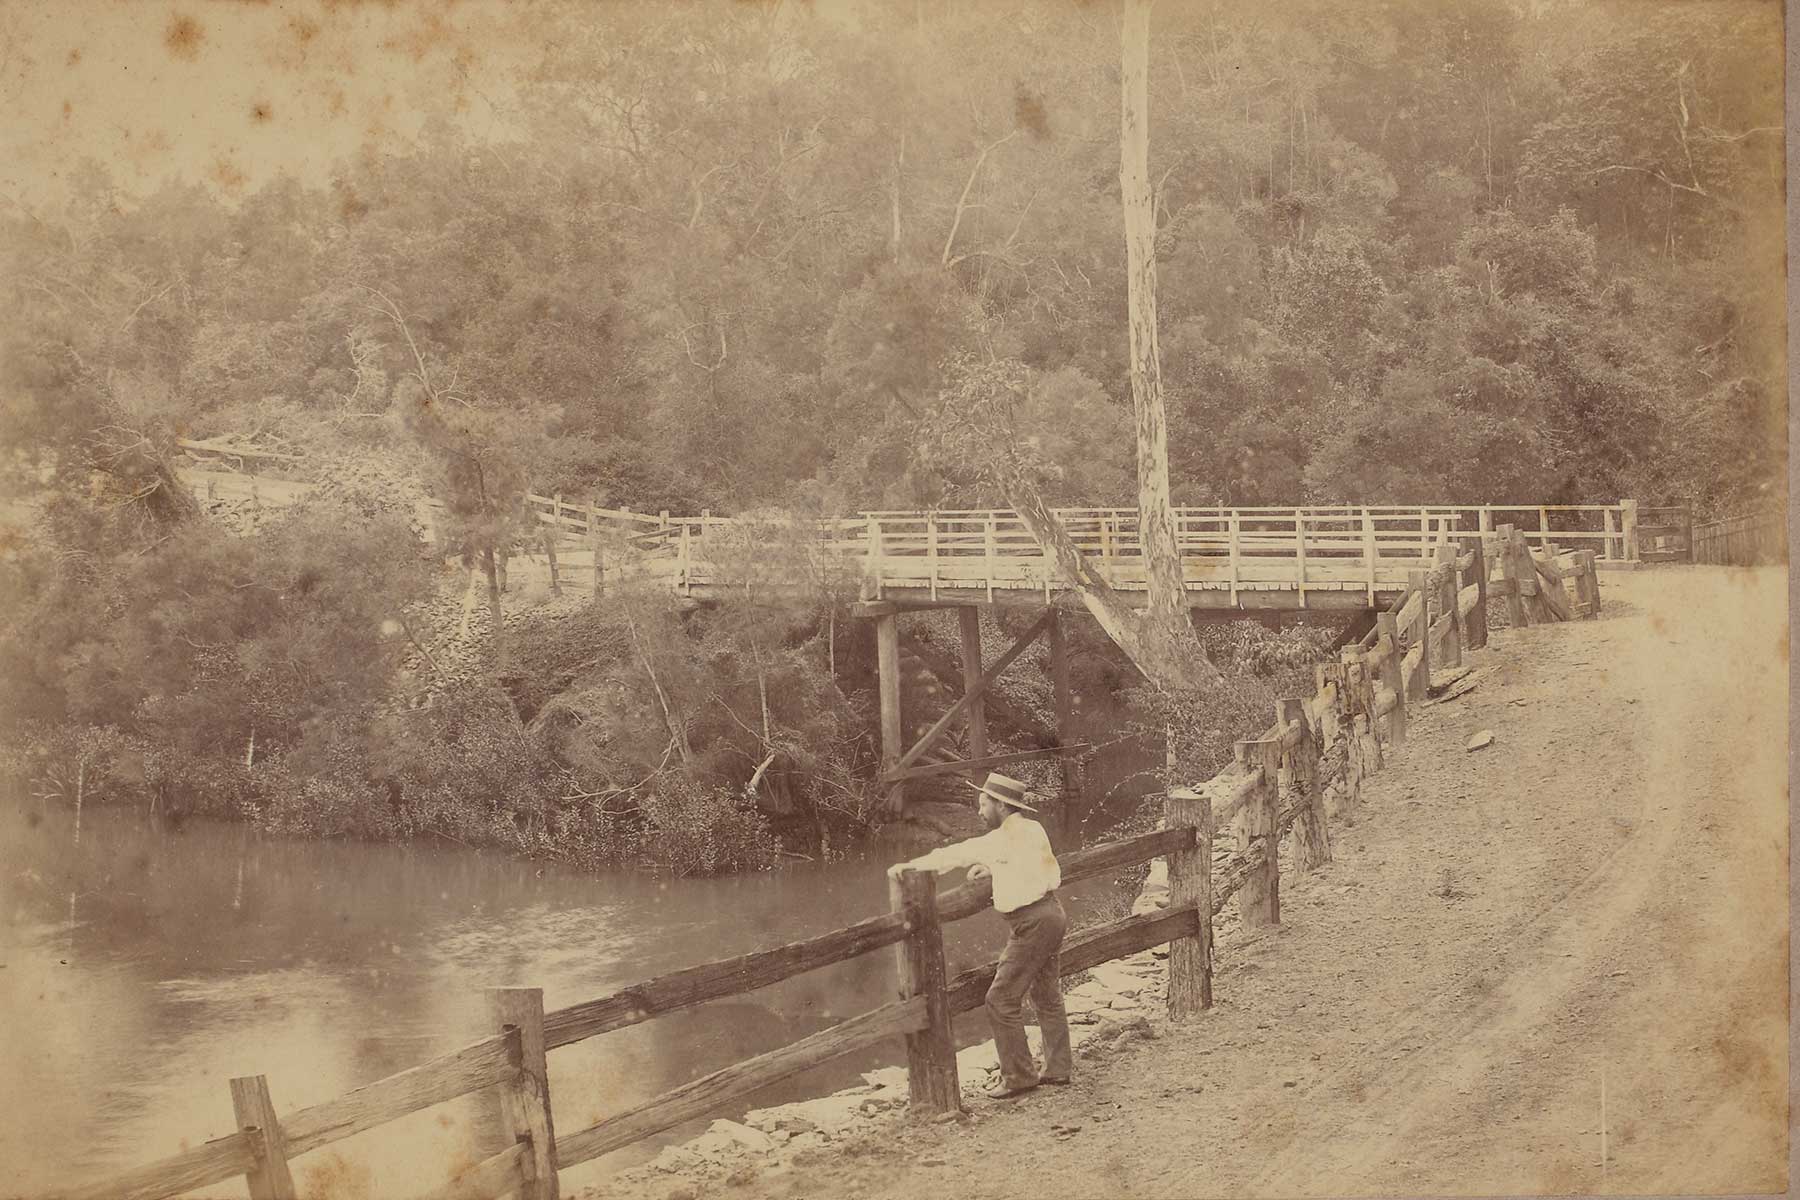 Witton Creek Bridge in the background, Radnor Street, Indooroopilly, Brisbane, Queensland c1880 to 1907